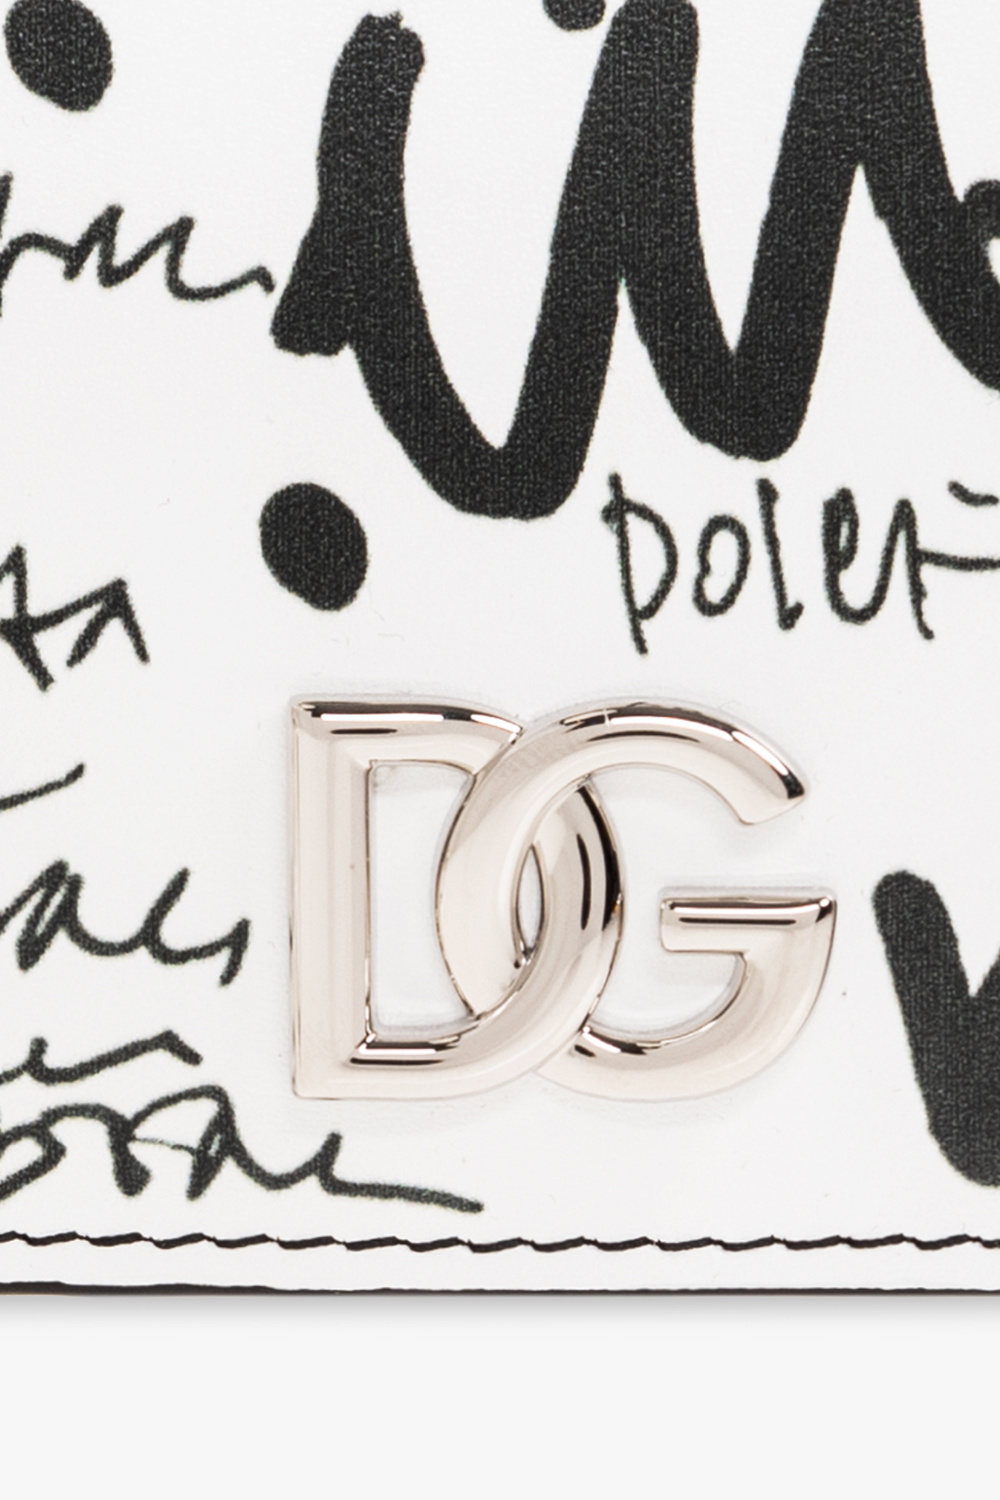 Dolce & Gabbana patch dolce & gabbana top handle handbag